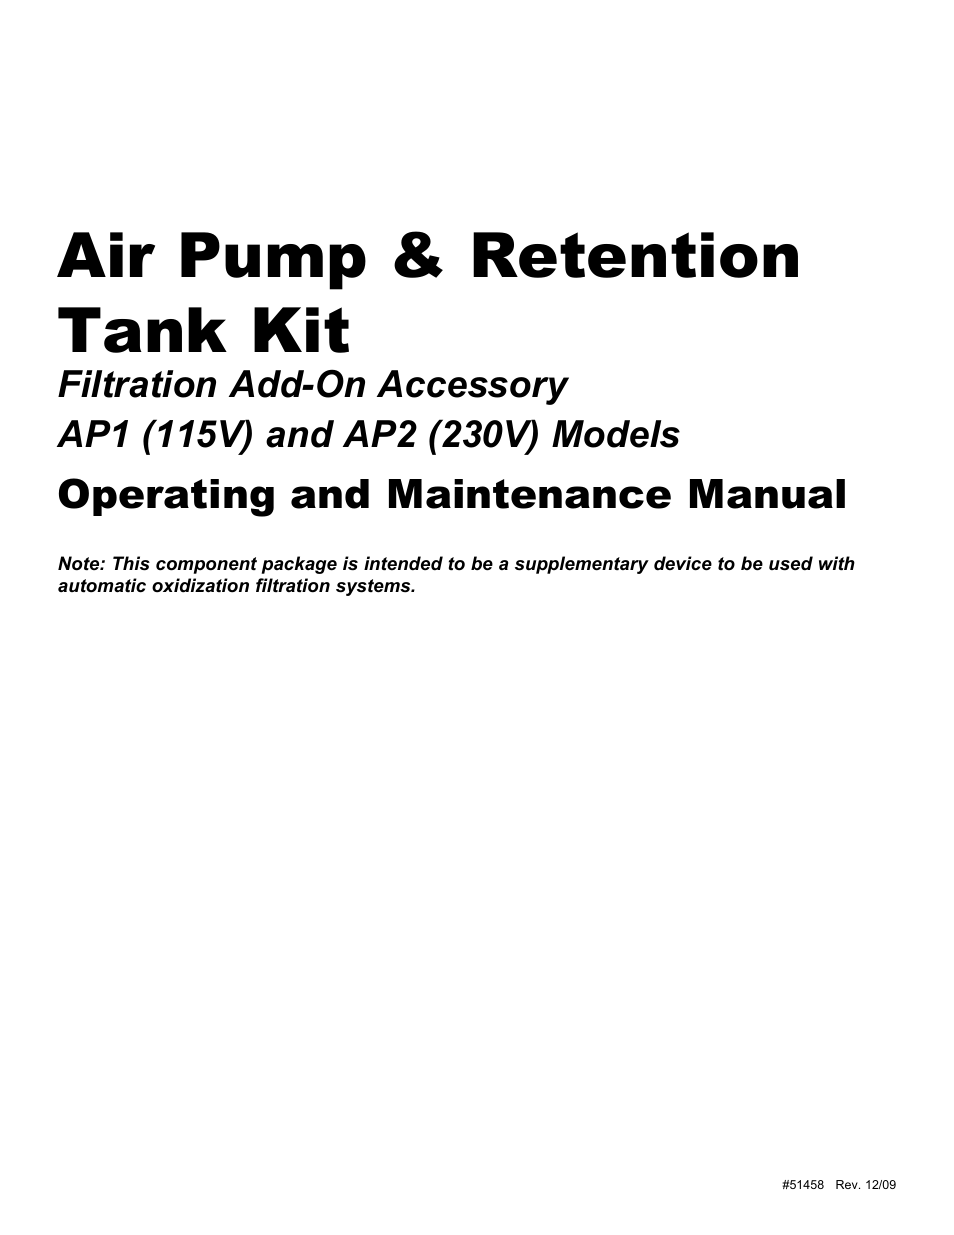 AP2 (230V) Air Pump & Retention Tank Kit